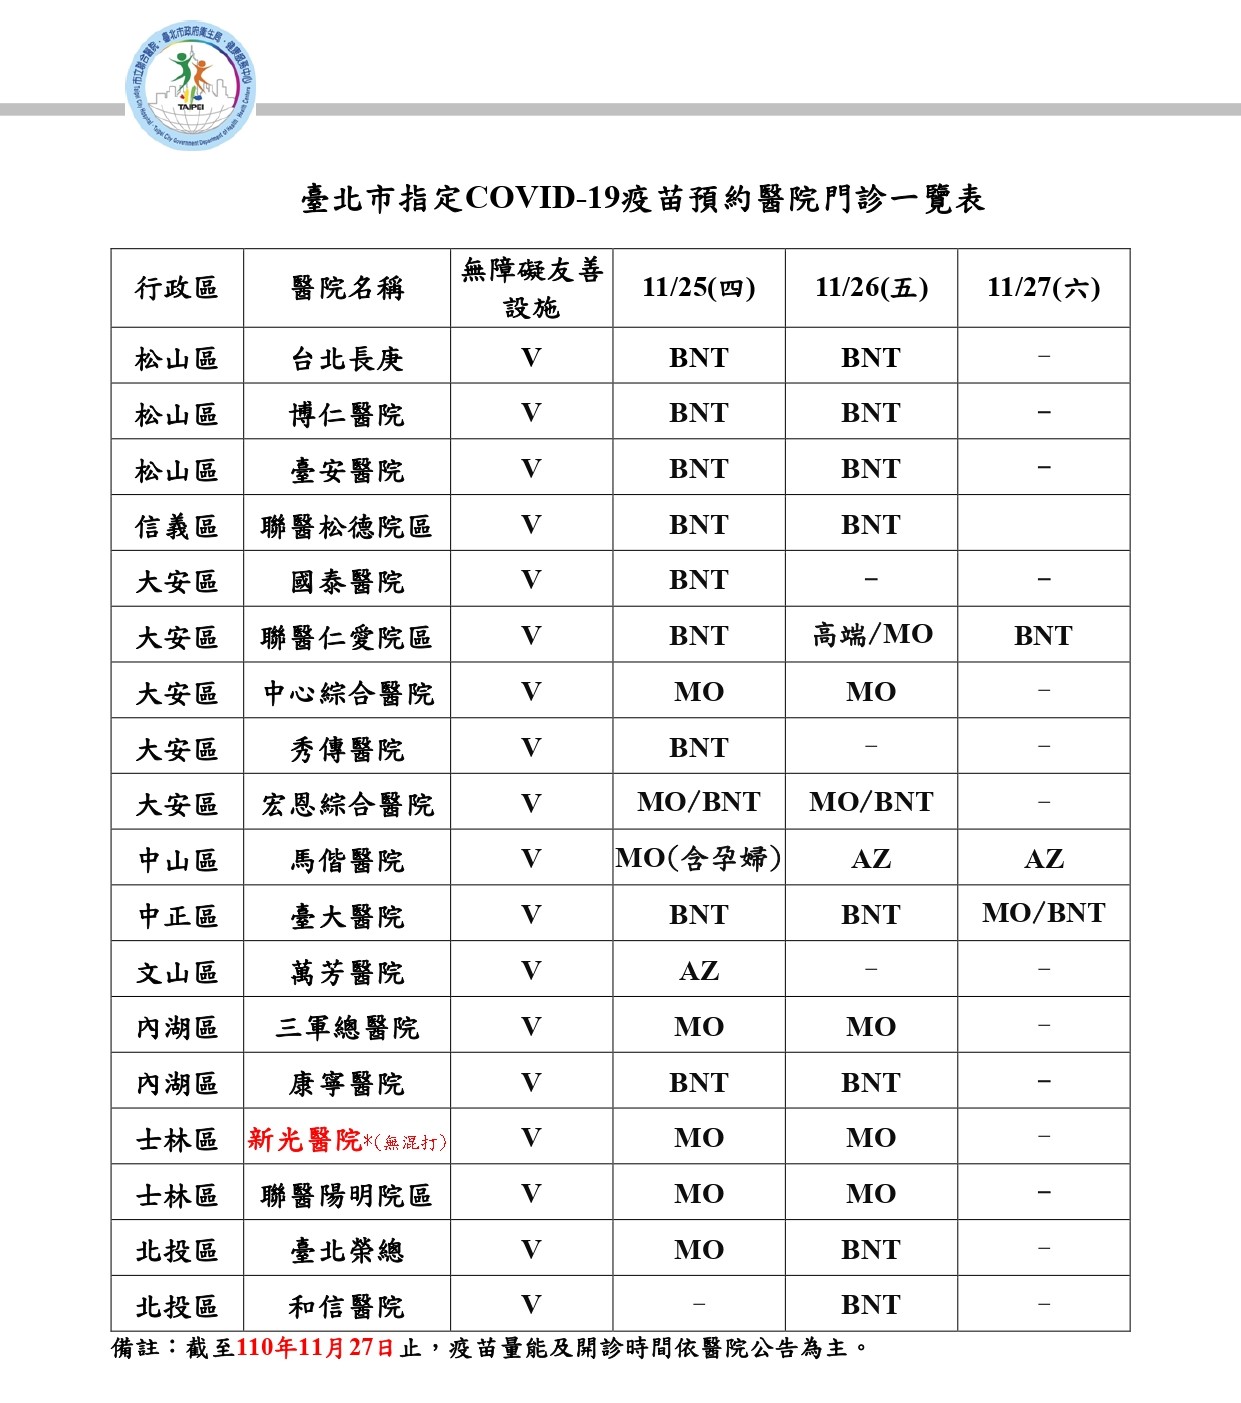 Daftar rumah sakit yang ditunjuk untuk vaksinasi COVID-19, layanan terkait tersedia hingga 27 November. (Sumber: Pemerintah Kota Taipei)